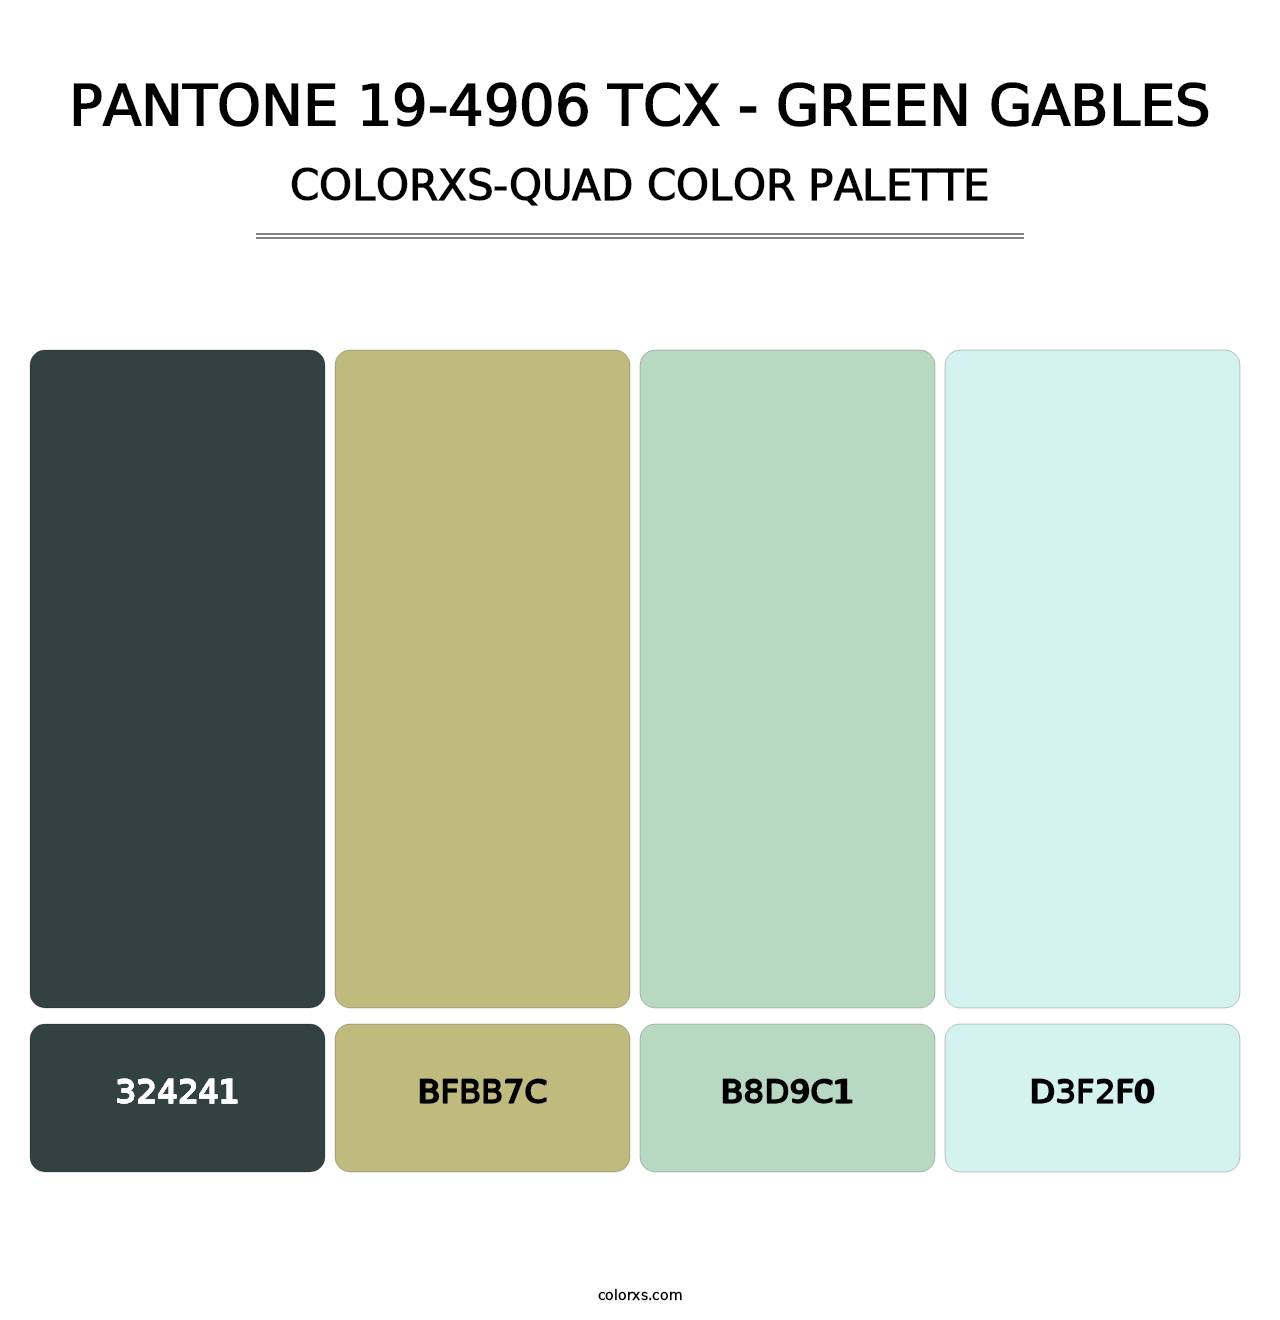 PANTONE 19-4906 TCX - Green Gables - Colorxs Quad Palette